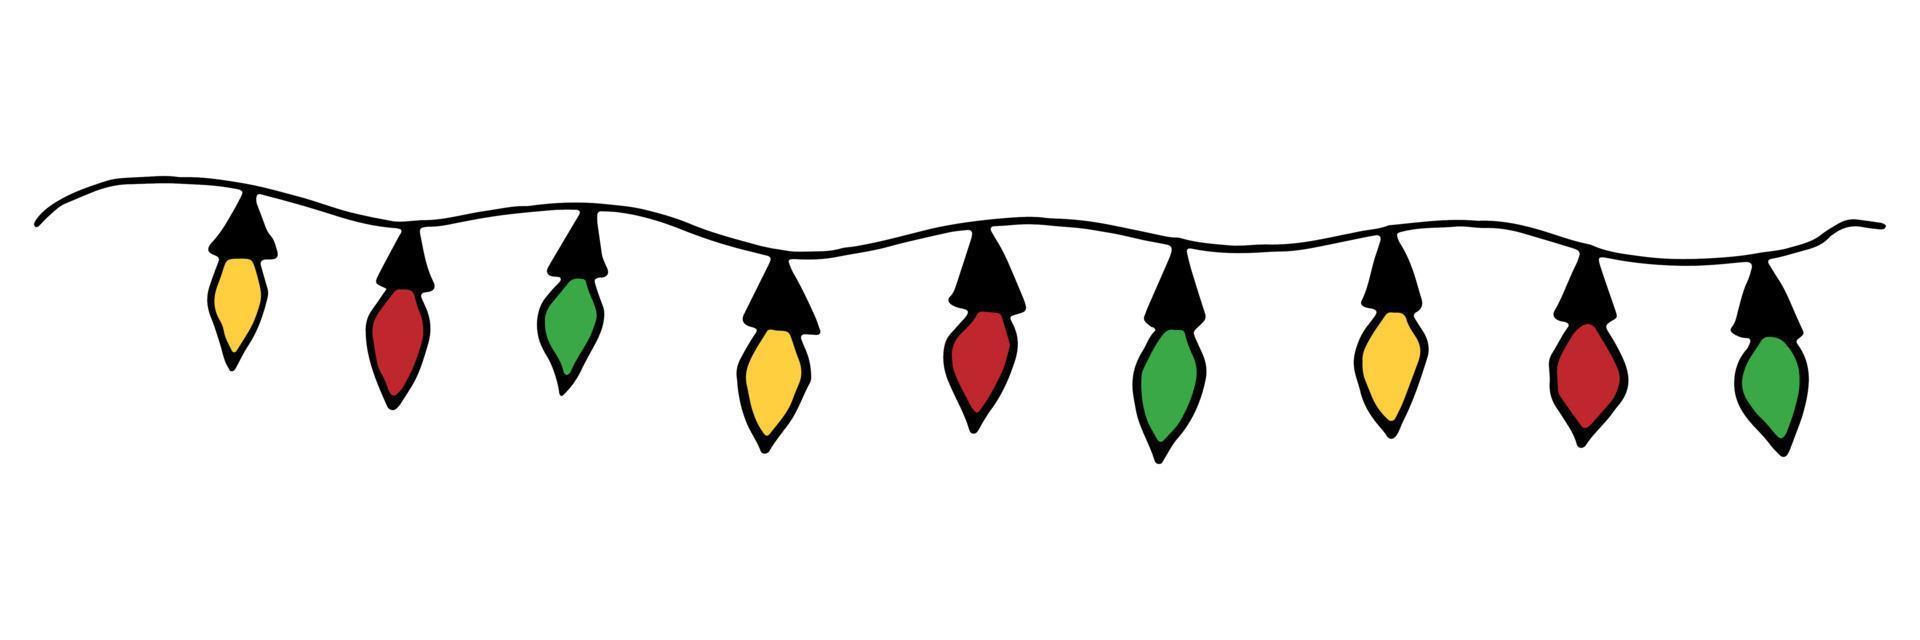 Natale ghirlanda con rosso verde e giallo leggero lampadine. vettore illustrazione.